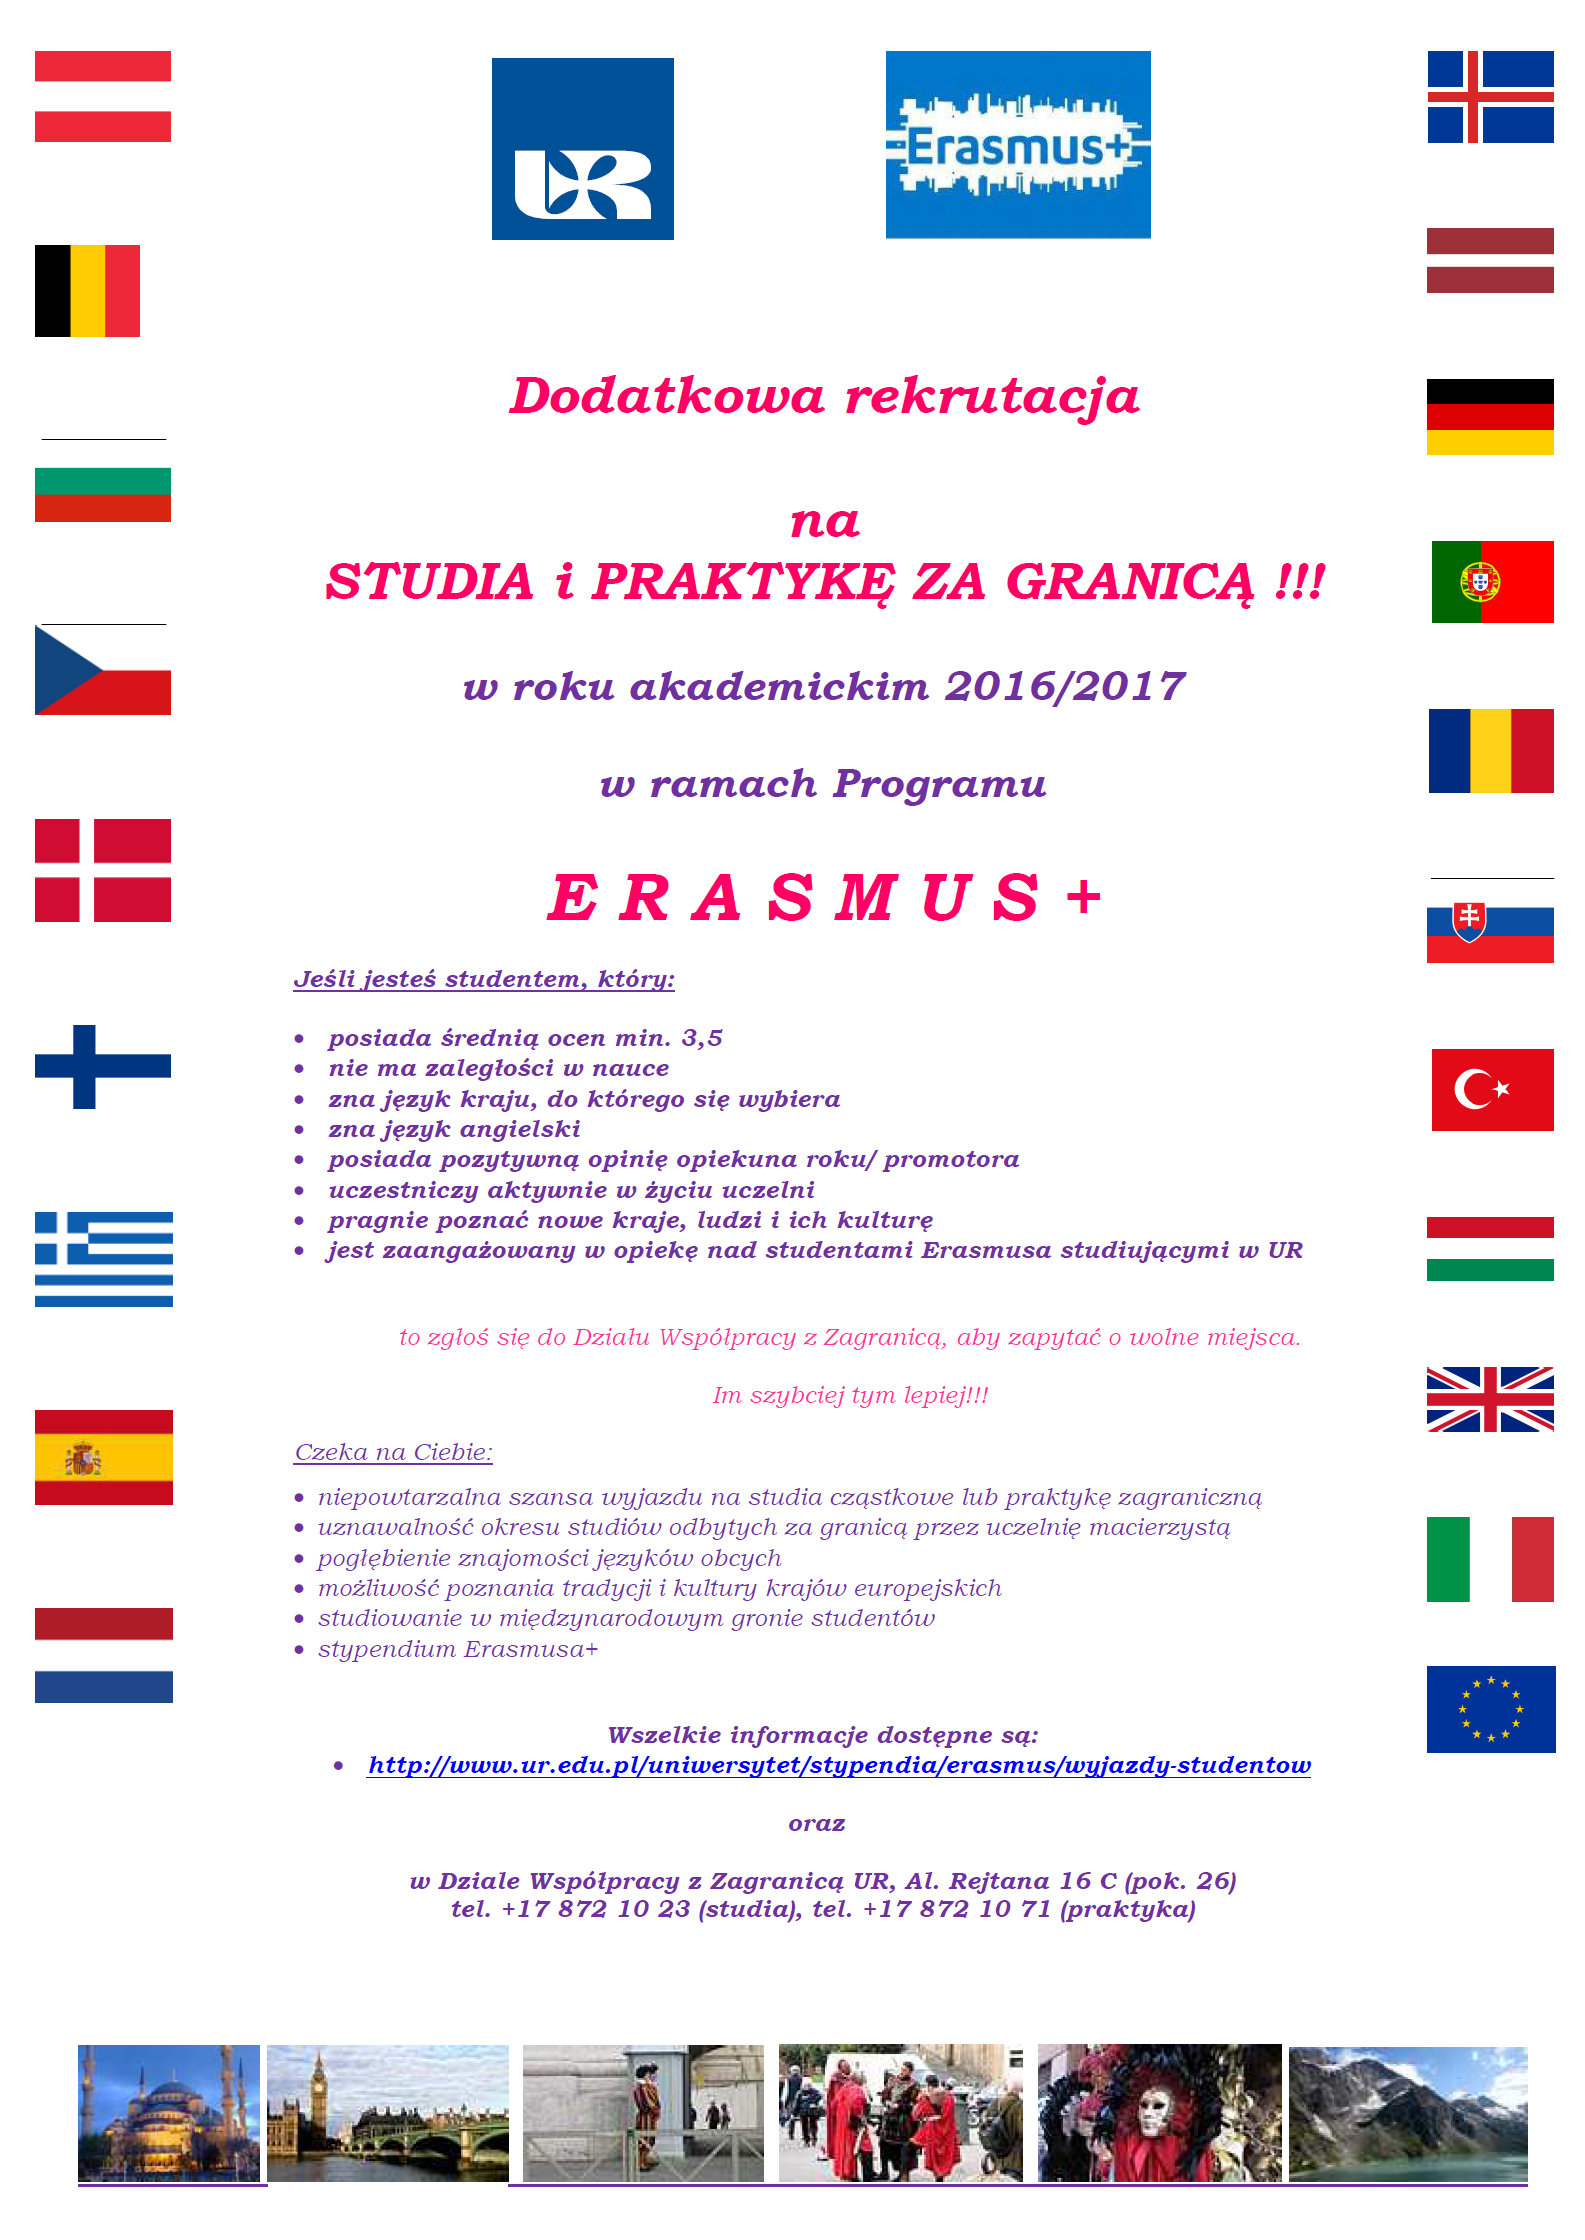 Dodatkowa rekrutacja na studia i praktykę za granicą w roku akademickim 2016/2017 w ramach programu Erasmus+